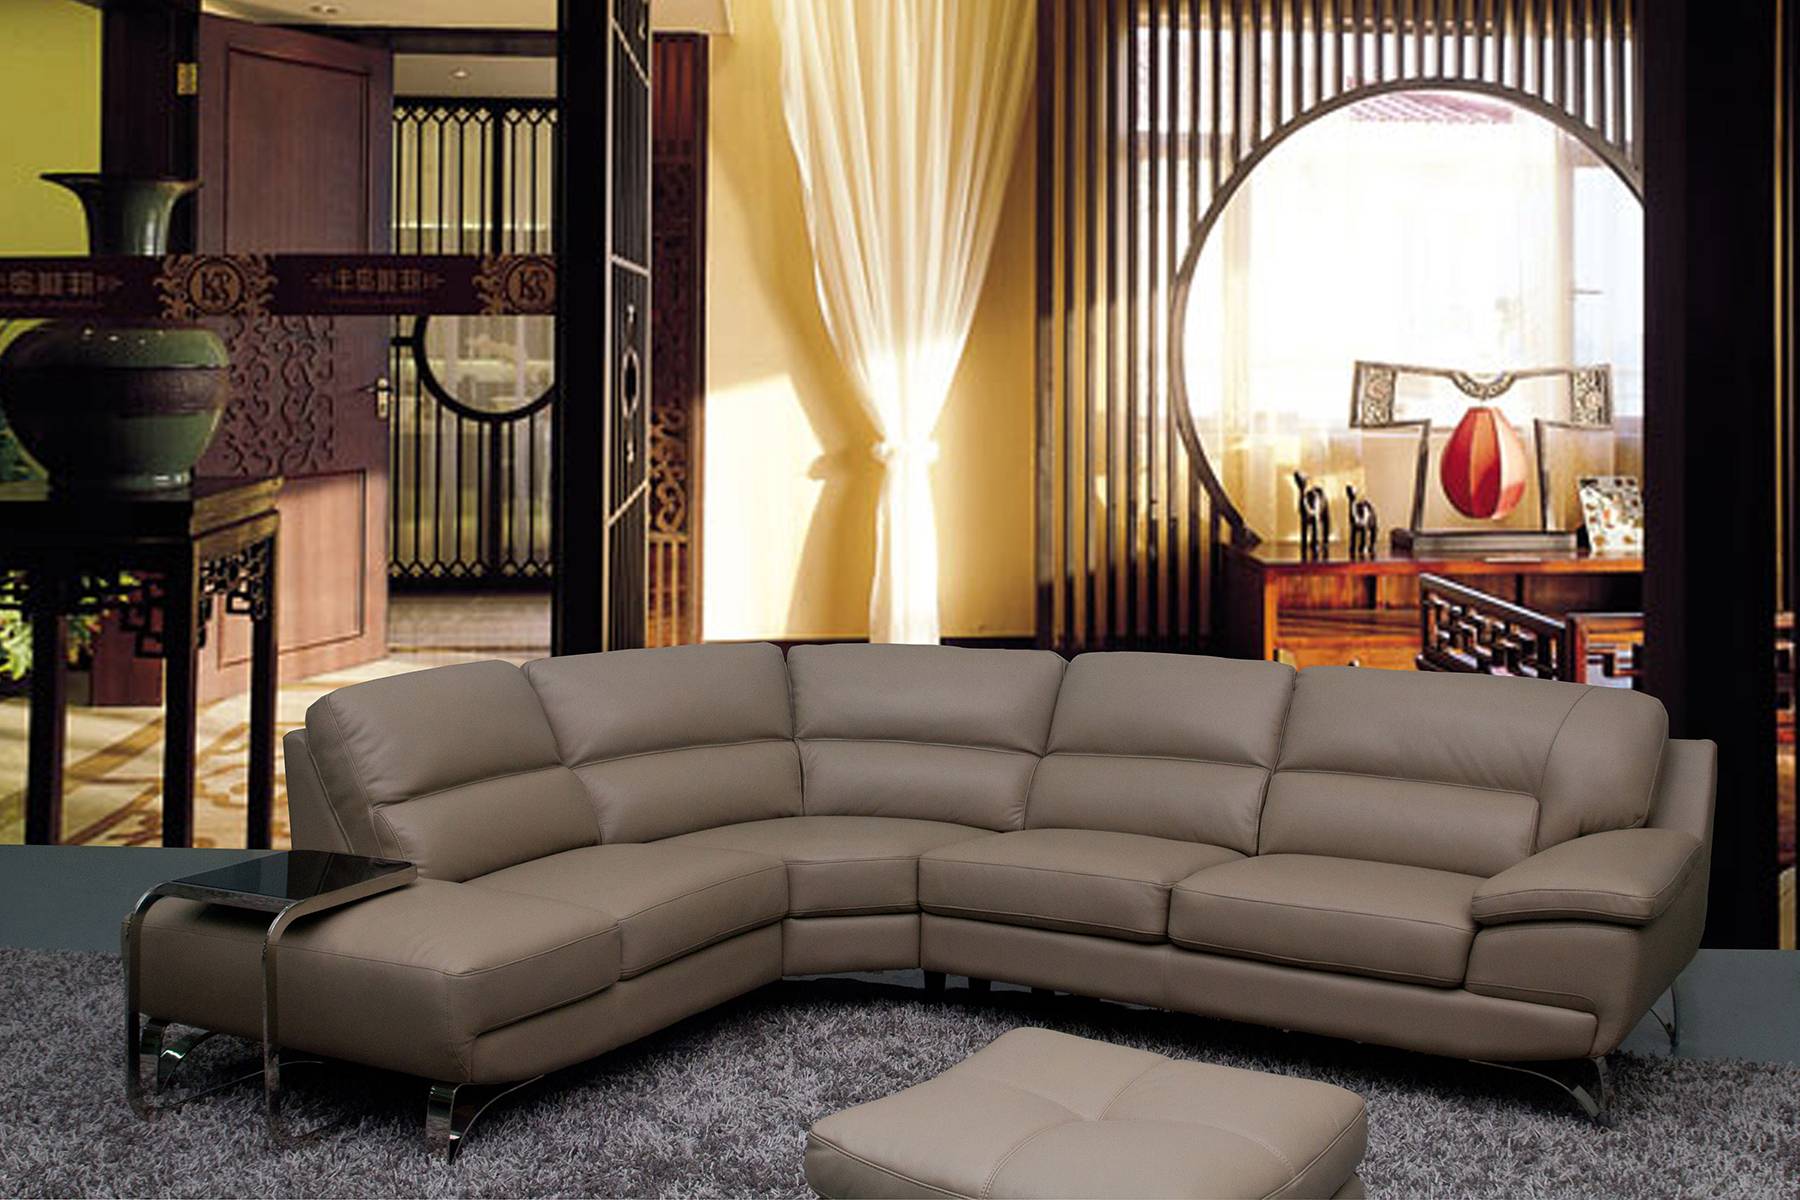 classic italian leather sofa